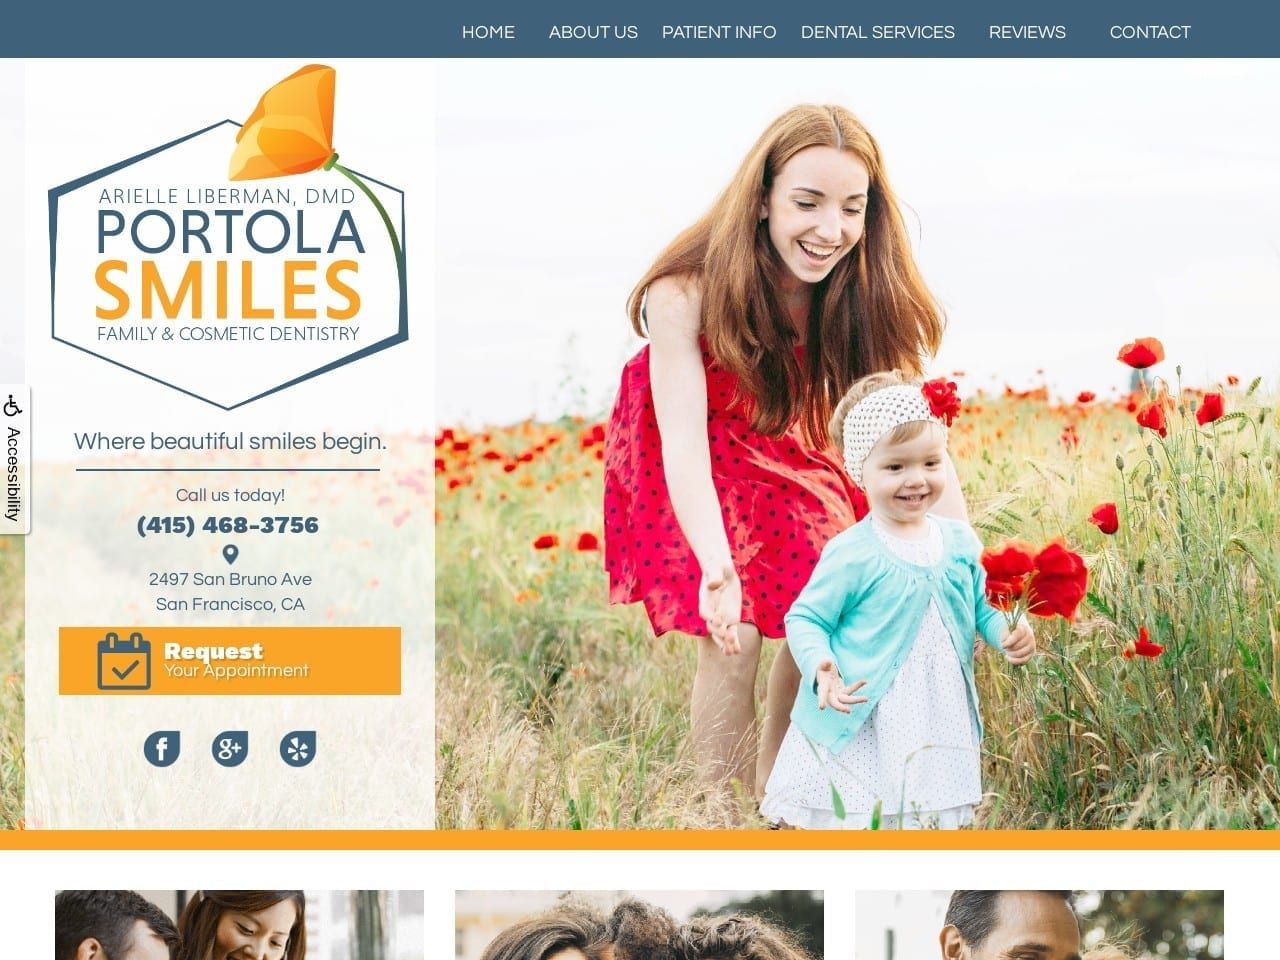 Portola Smiles Website Screenshot from portolasmiles.com